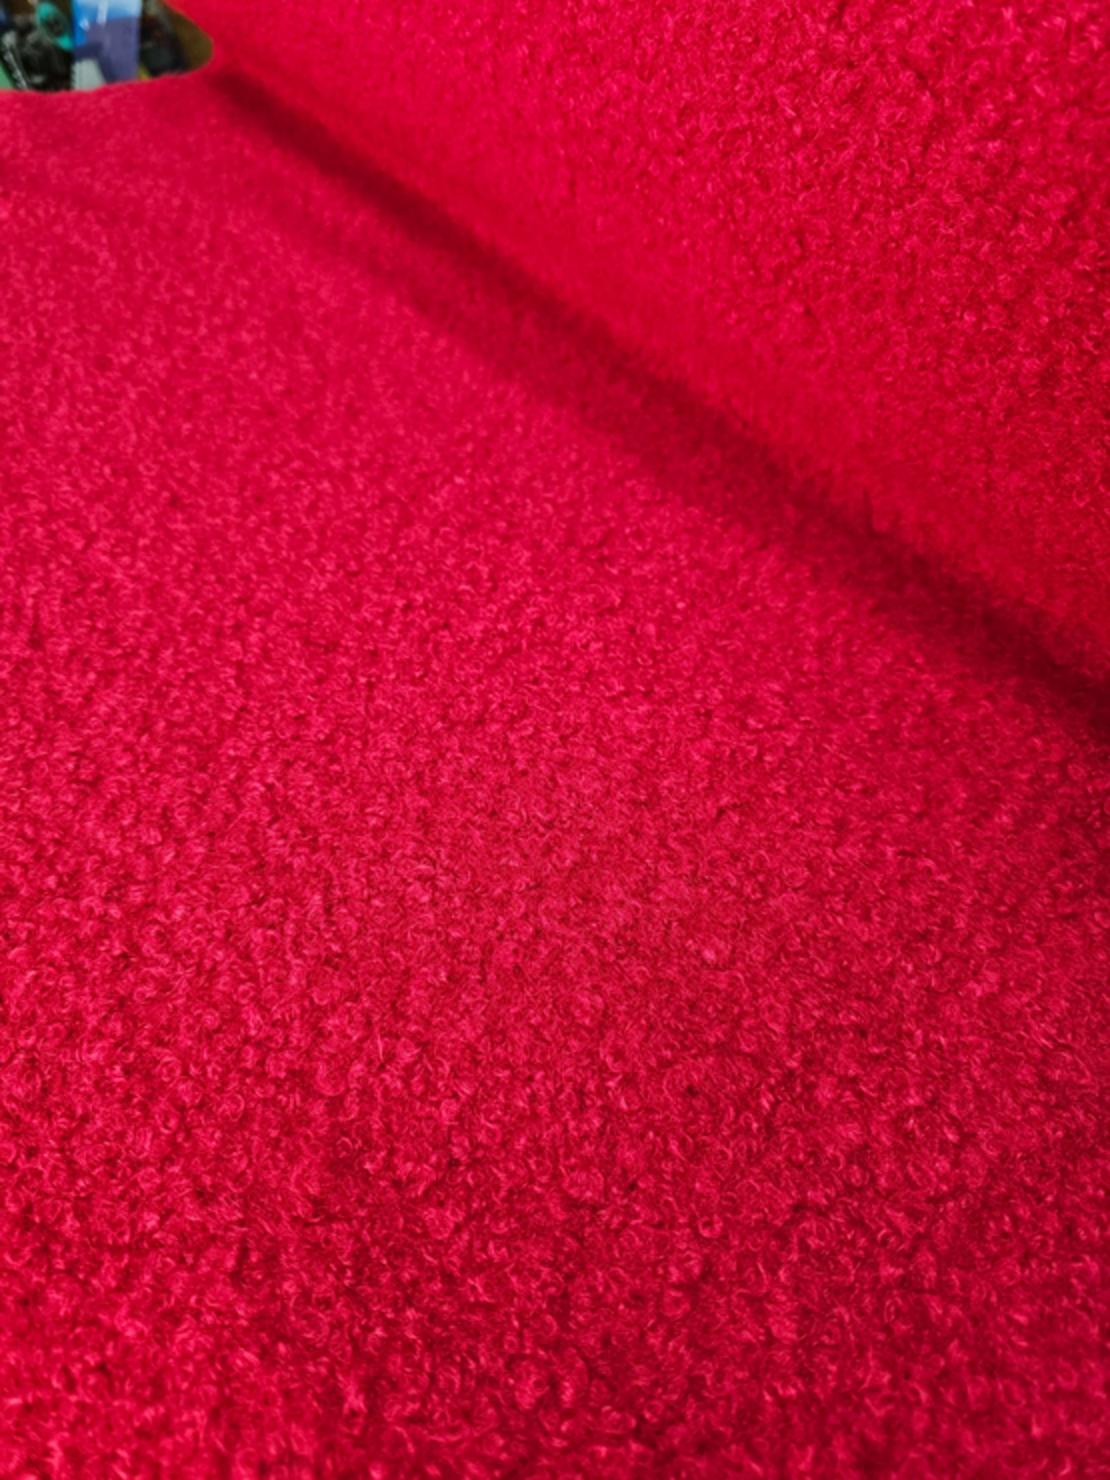 אריג בוקלה צבע אדום דגם טדי